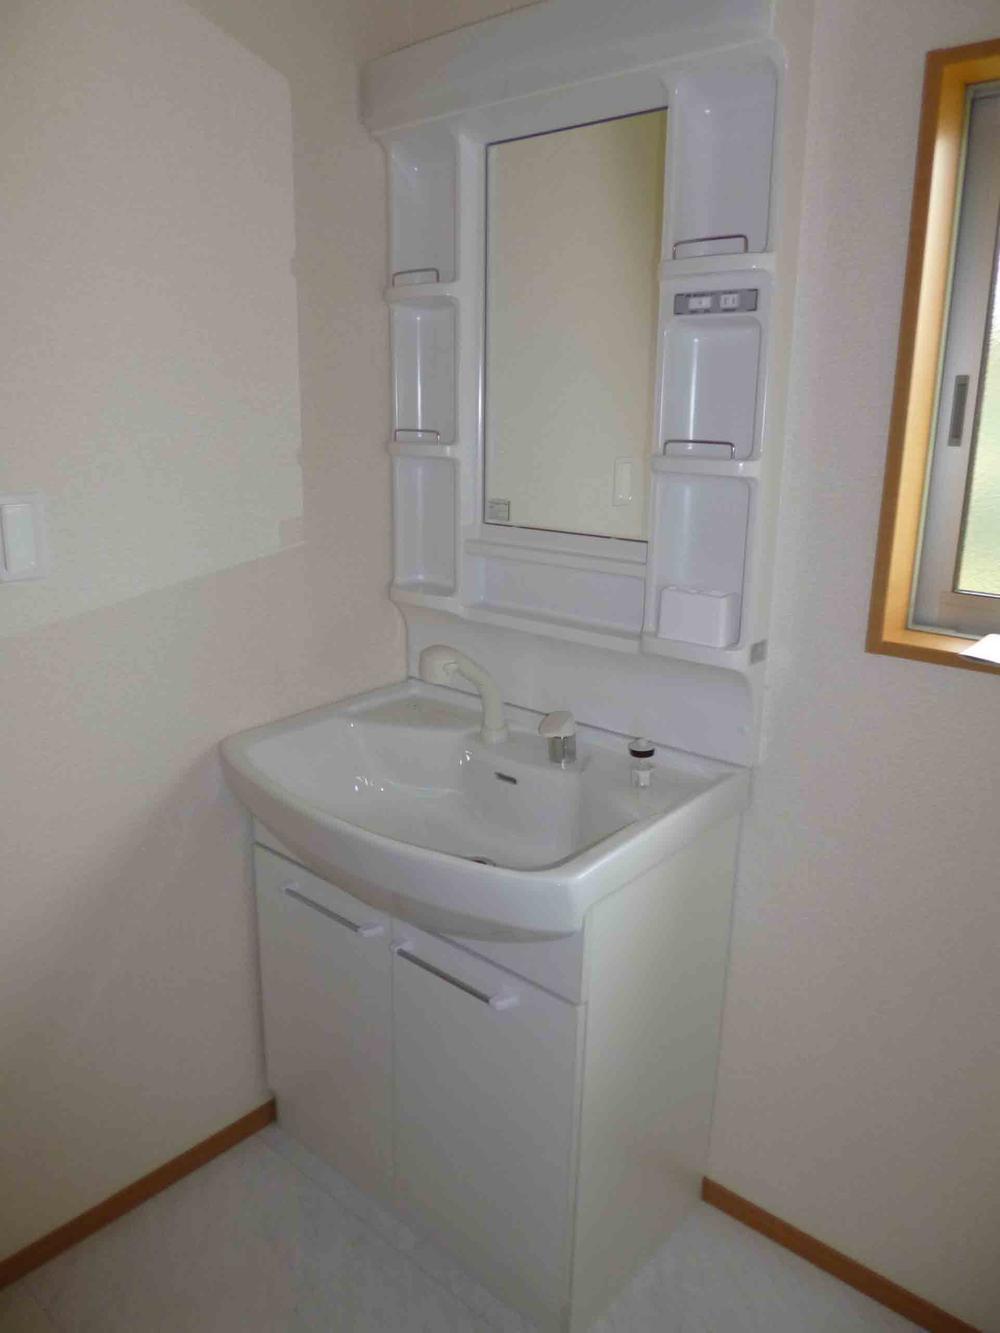 Wash basin, toilet. 2013.6.24 shooting. Shower Dresser